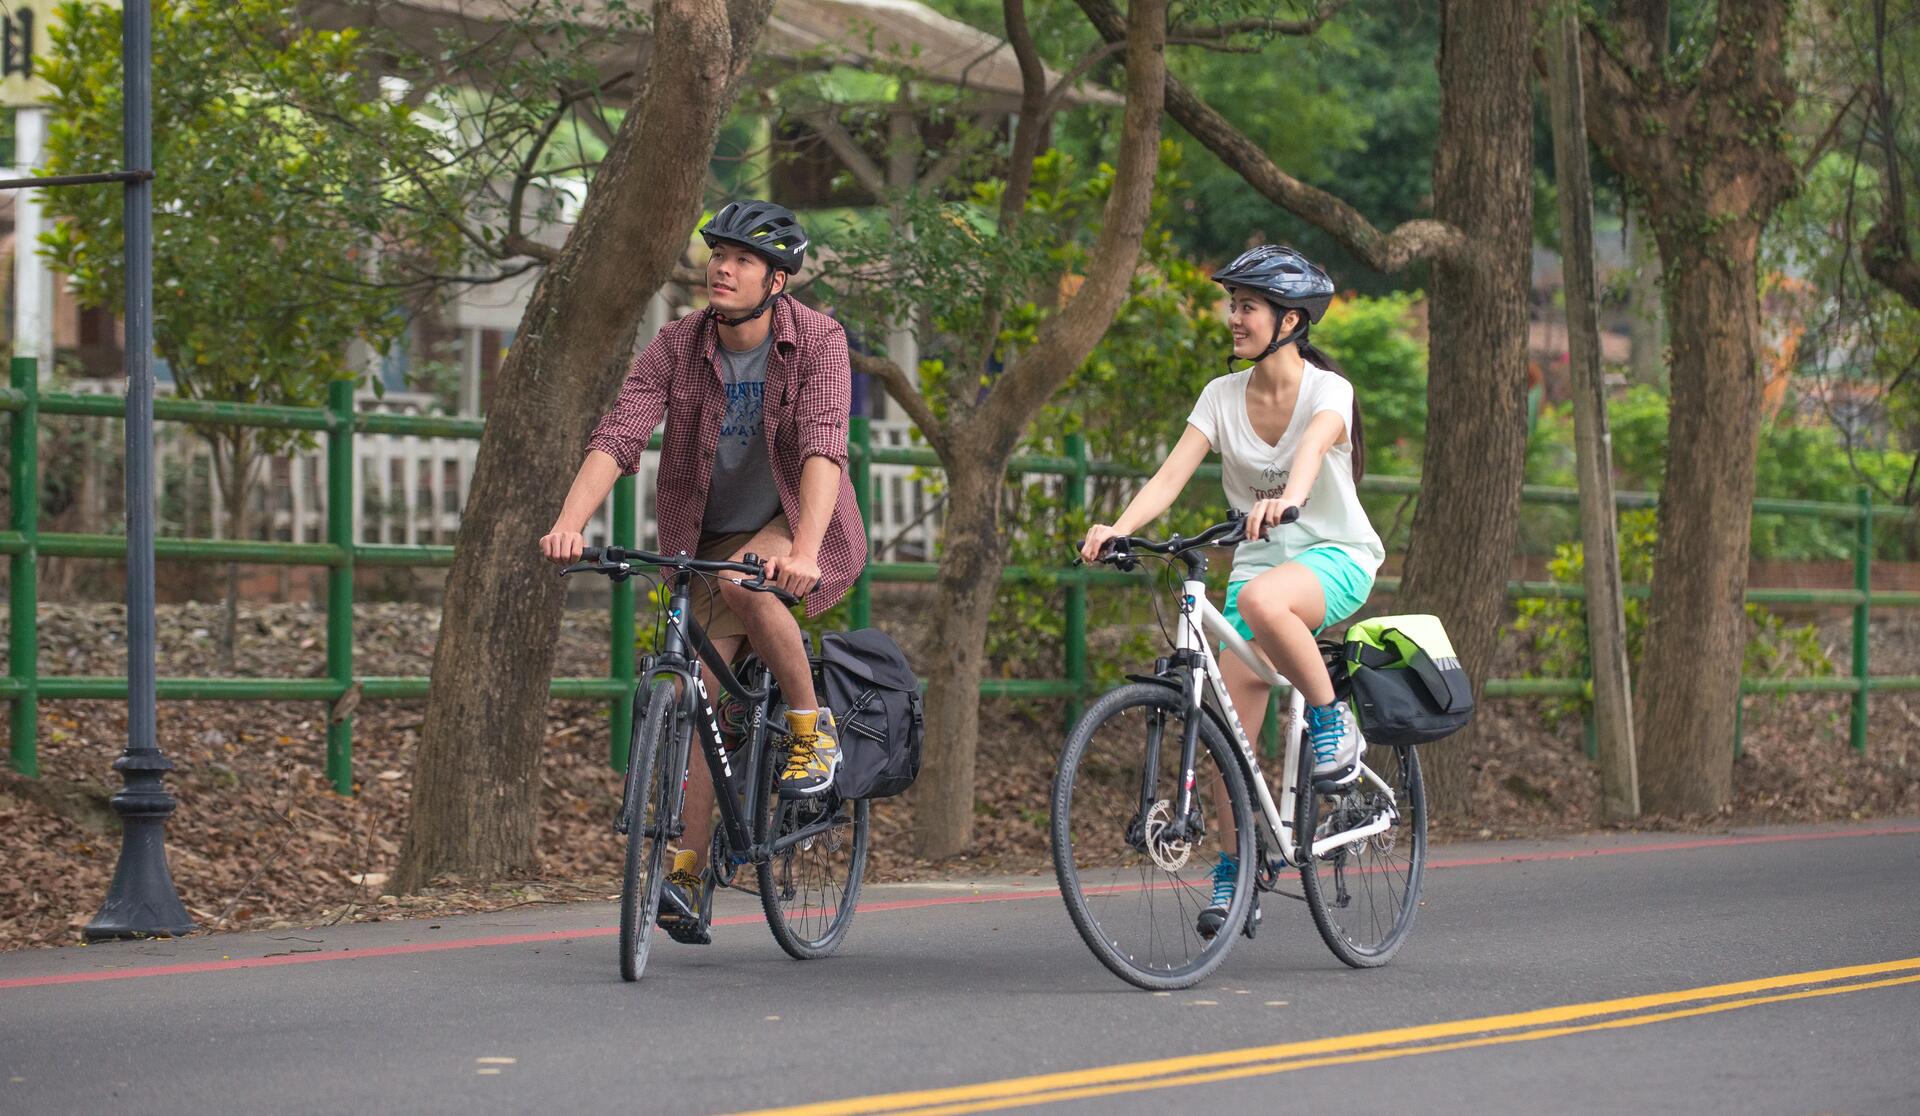 kobieta i mężczyzna w kaskach rowerowych jadący rowerami po ulicy 